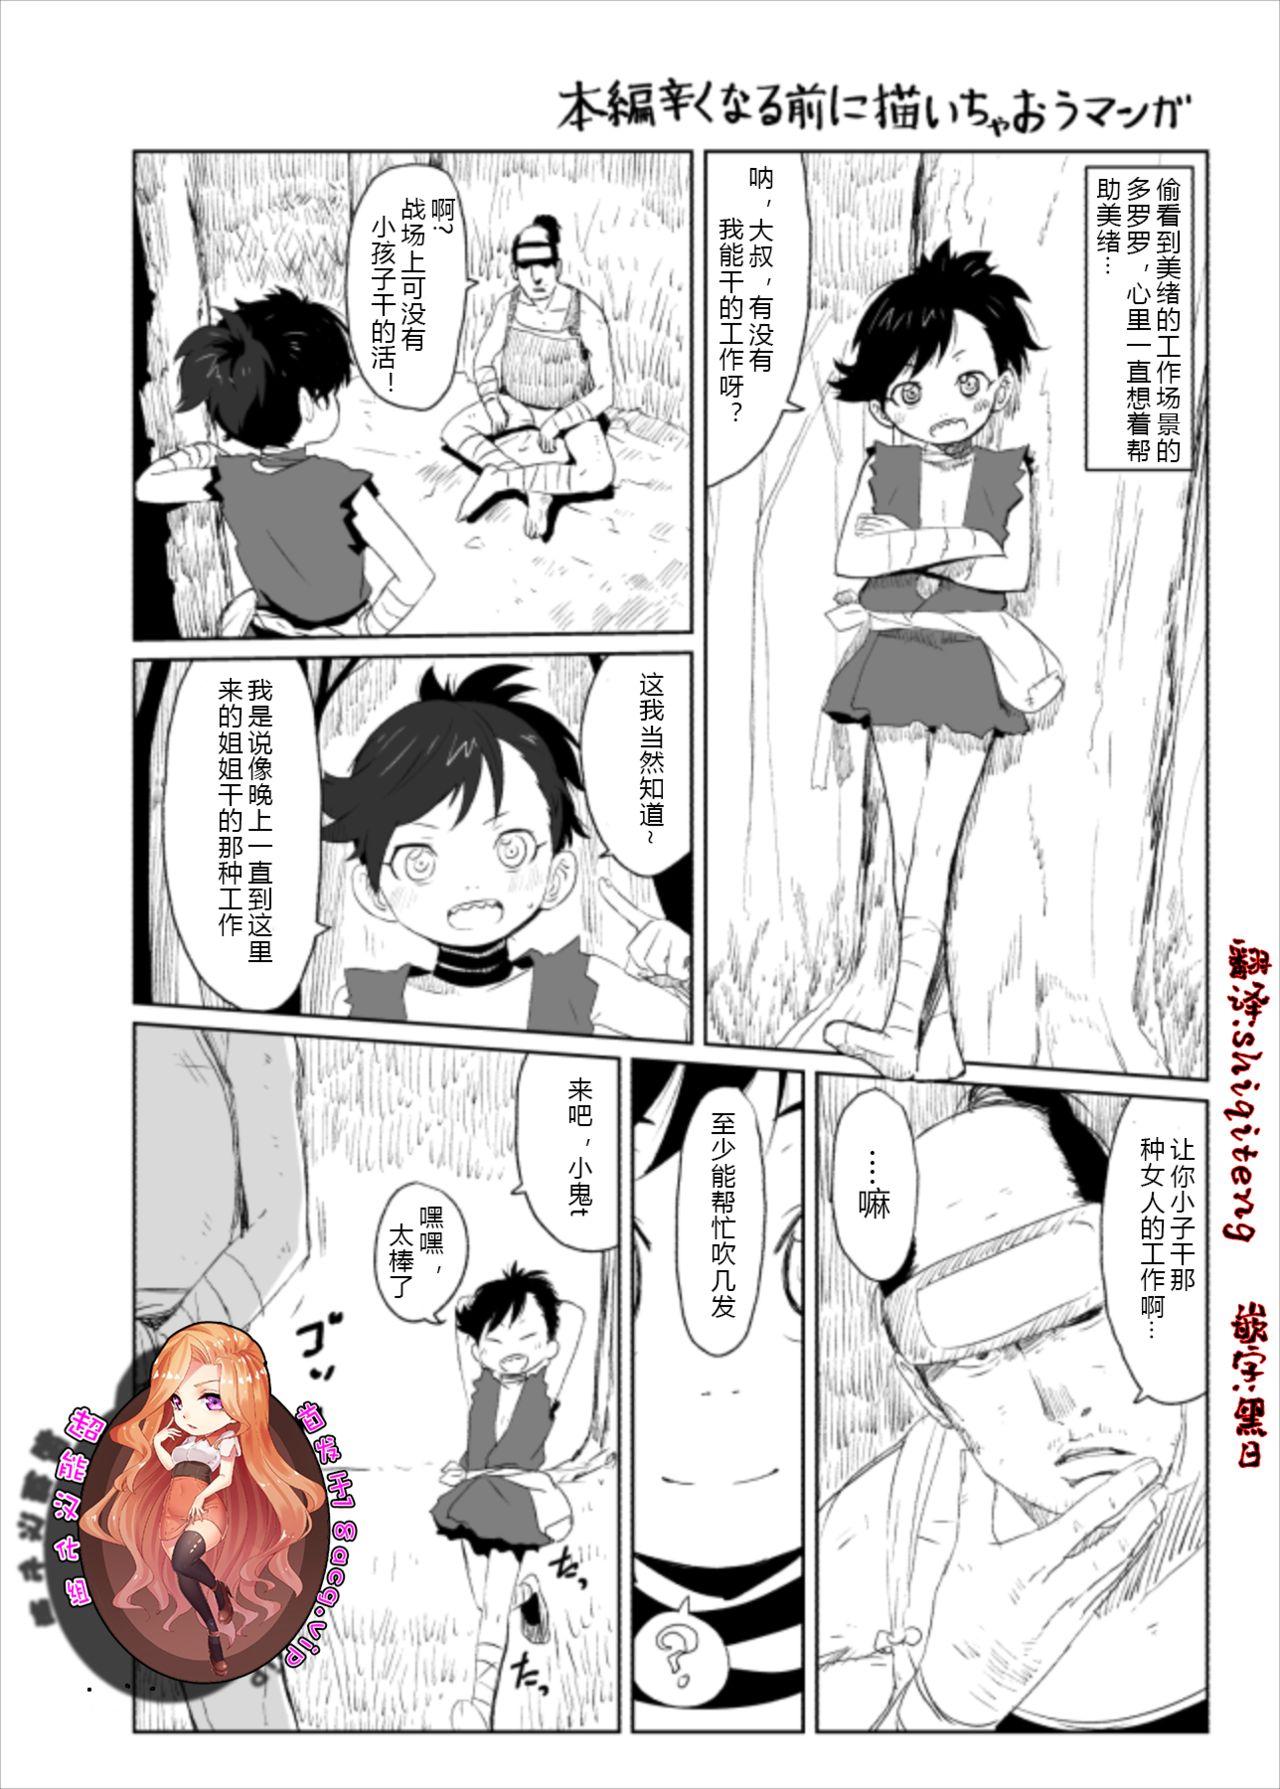 Asstomouth Dororo Rakugaki Echi Manga - Dororo Climax - Picture 1